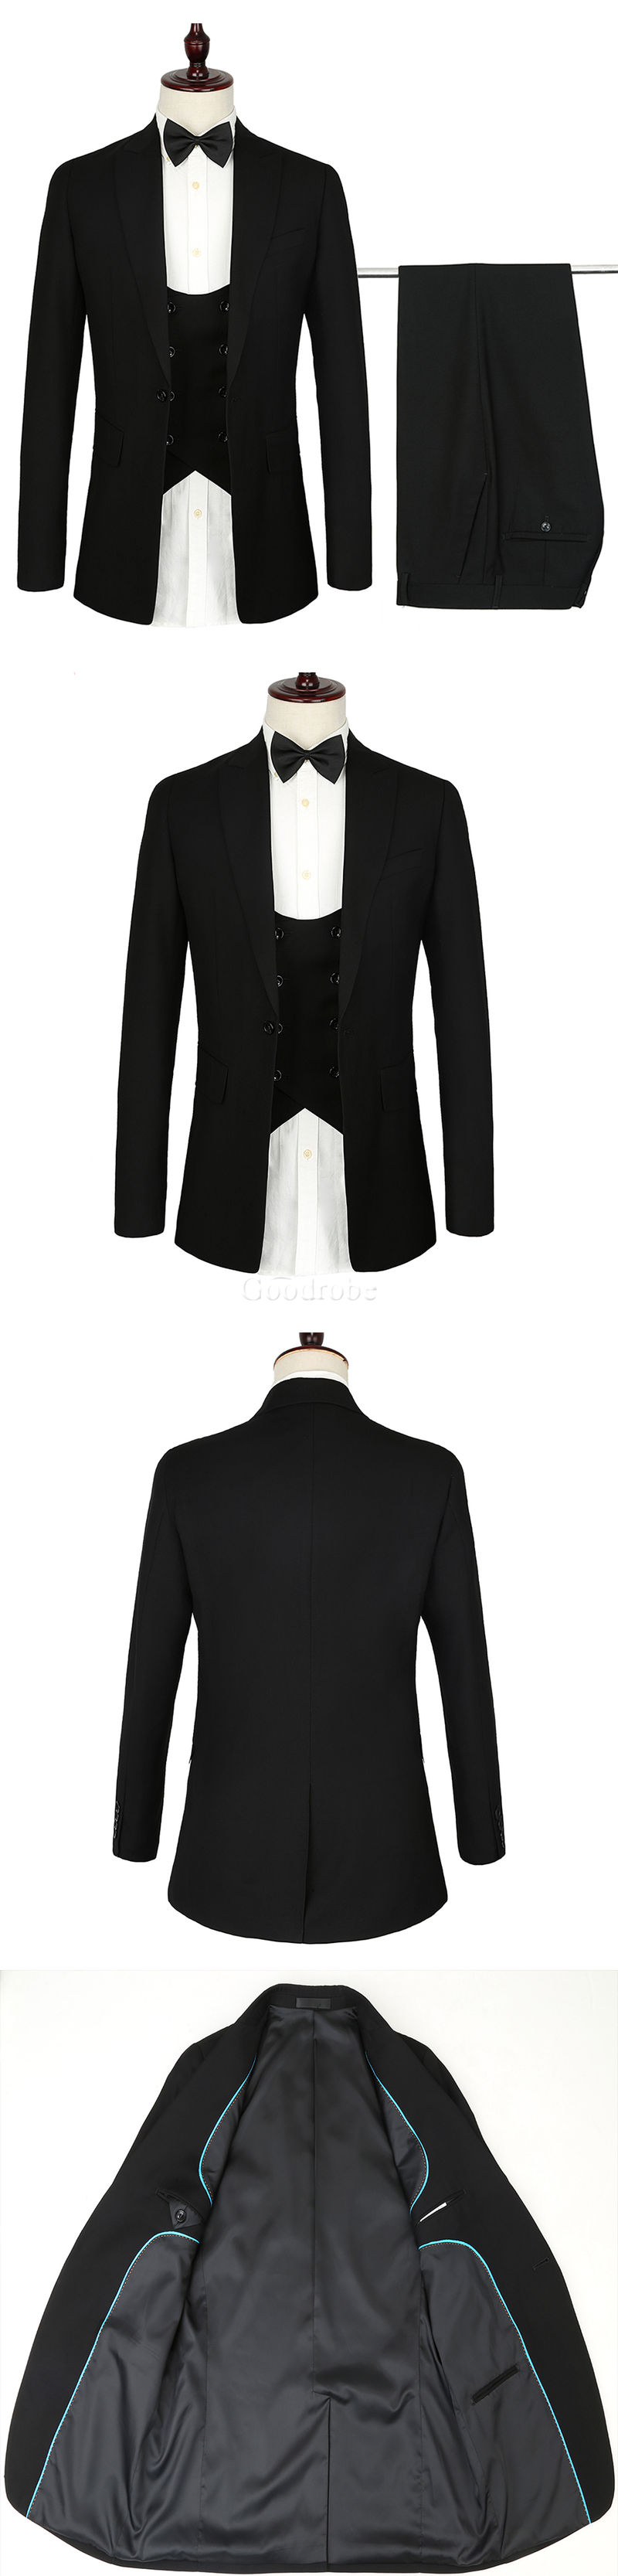 Taille européenne costumes 3 pièce noir design hommes formelle